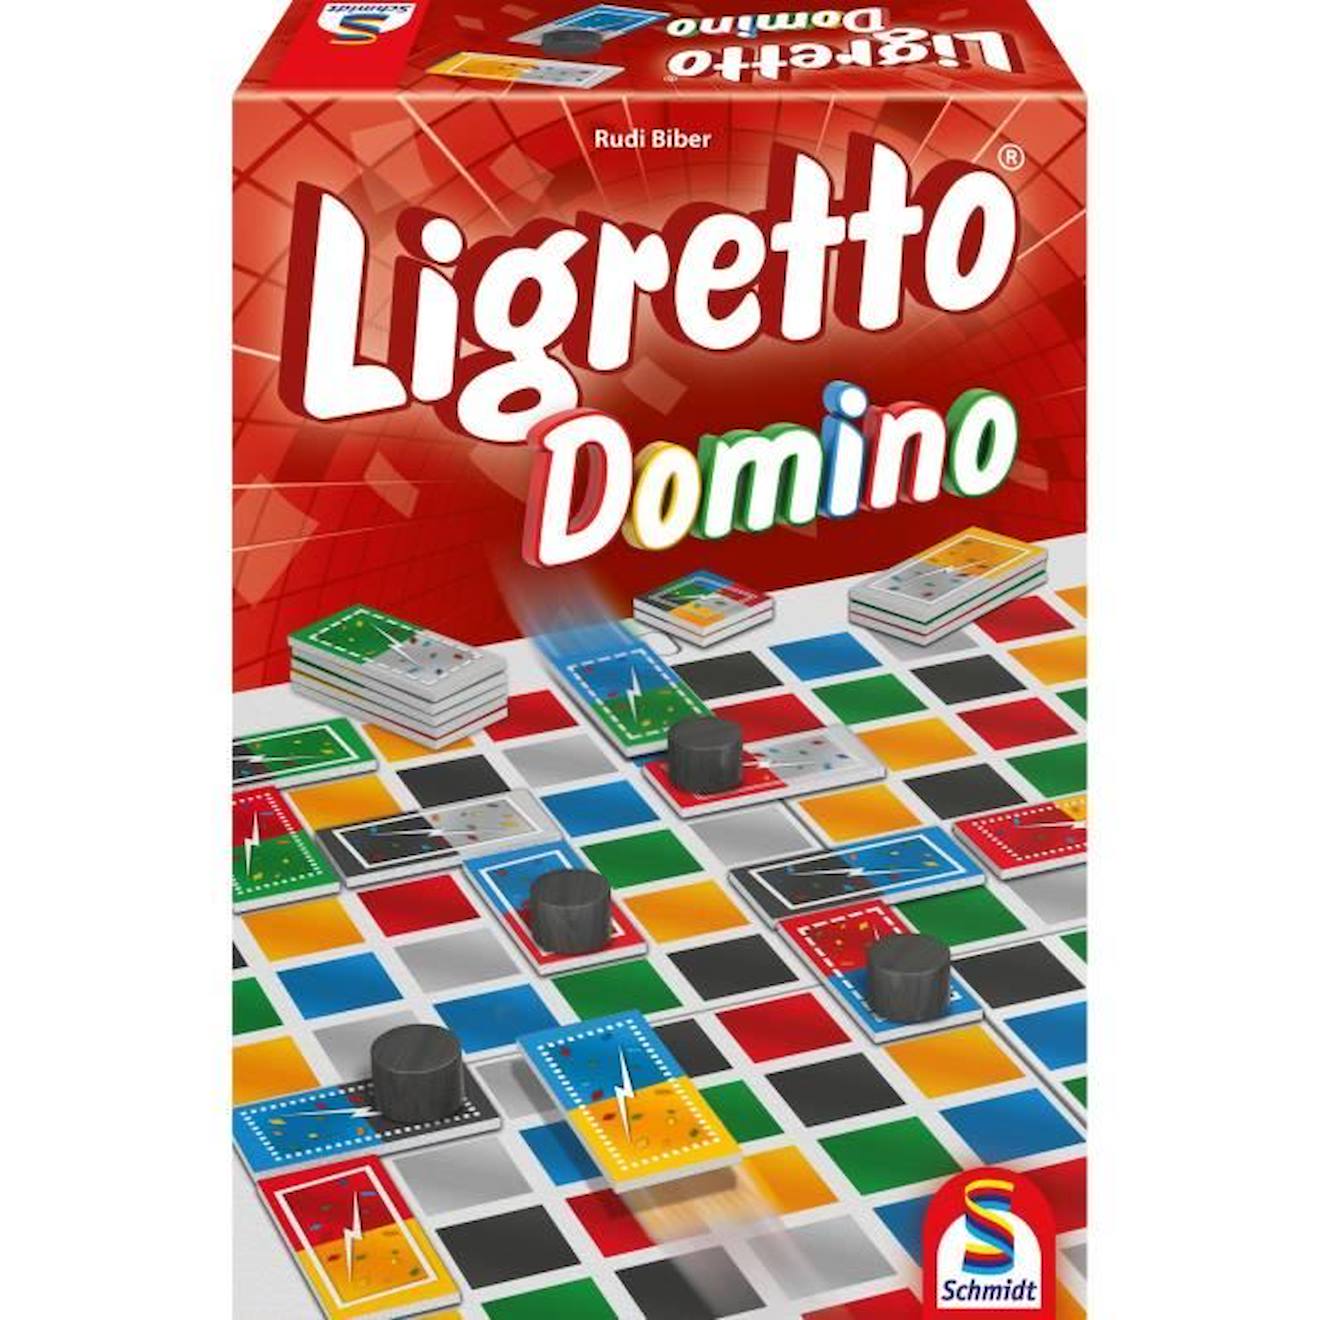 Jeu De Tactique Et Jeu Familial - Schmidt Spiele - Ligretto Domino - Multicolore - 2 À 6 Joueurs Rou